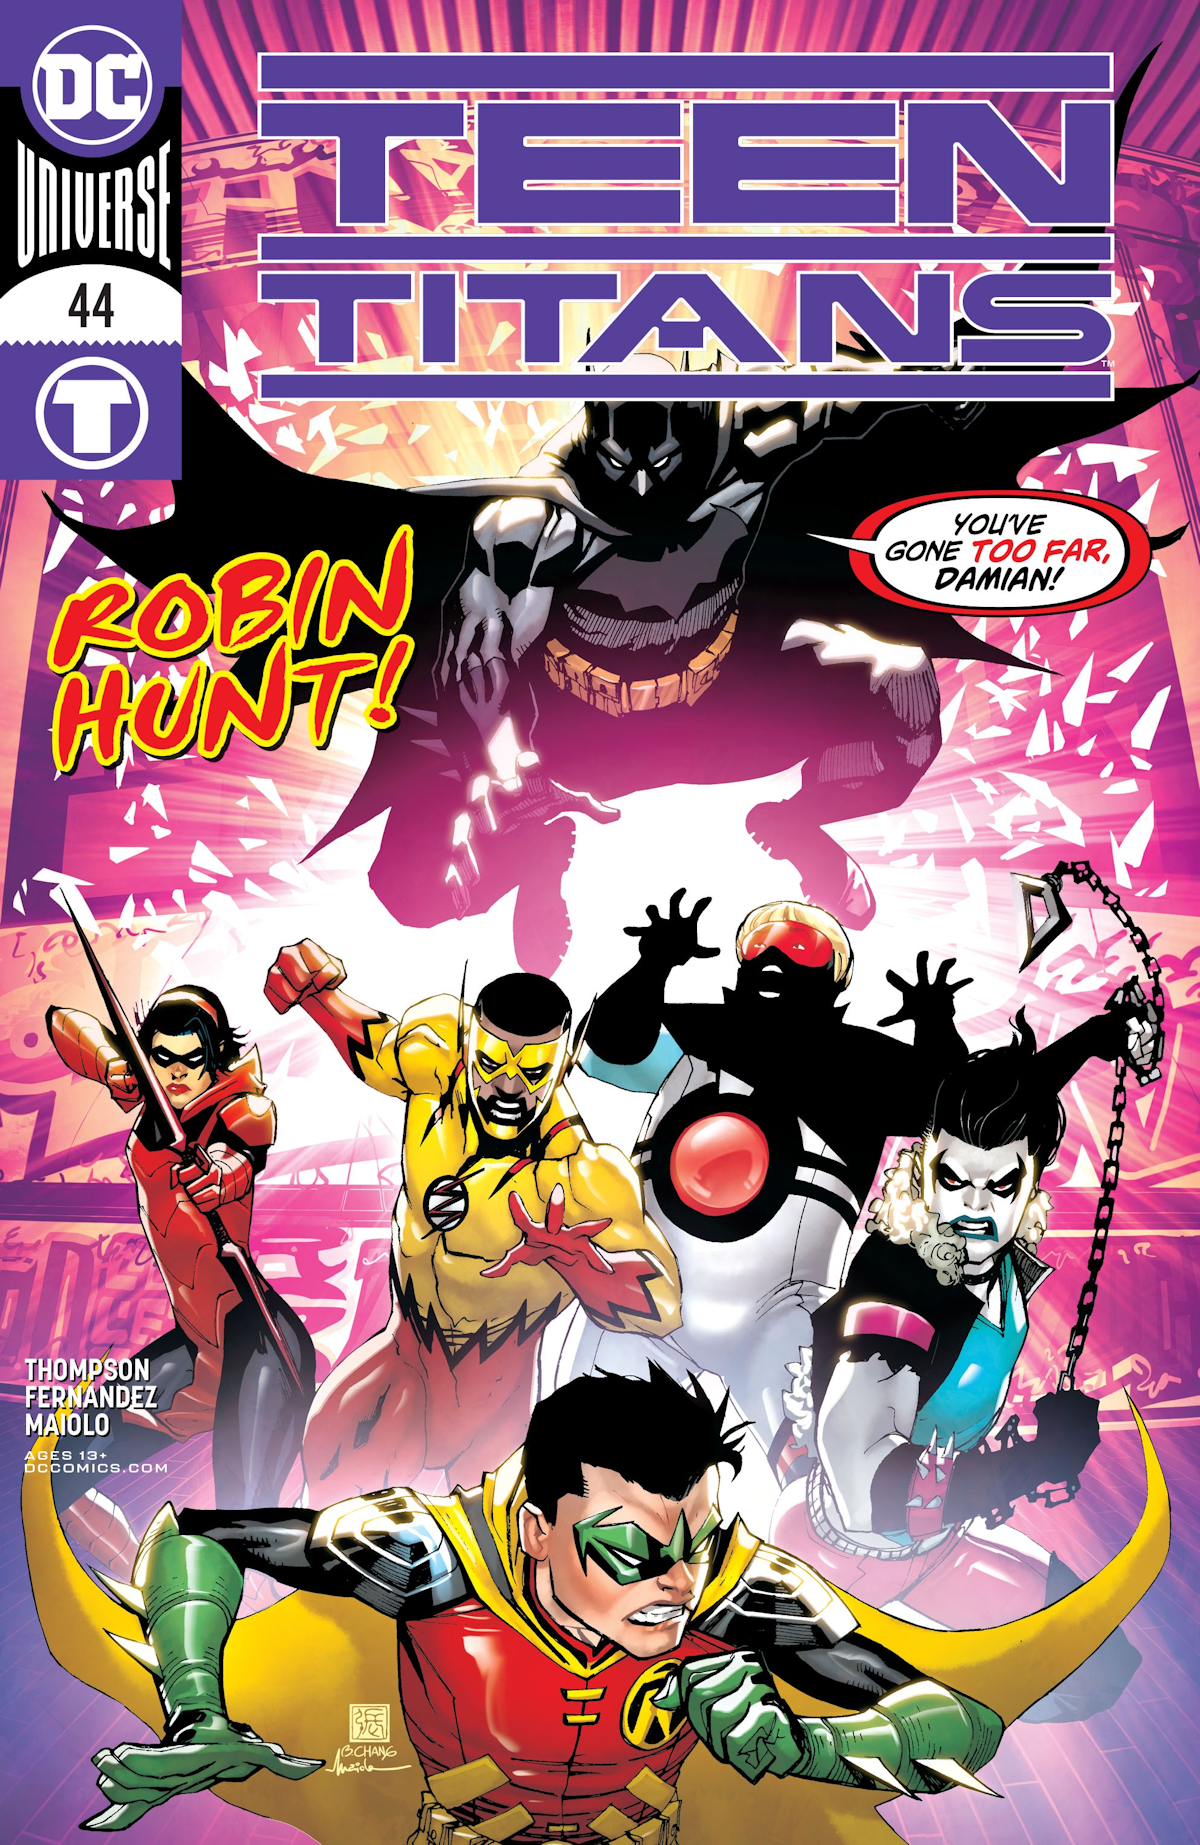 Teen Titans Vol. 6 44 (Cover A)